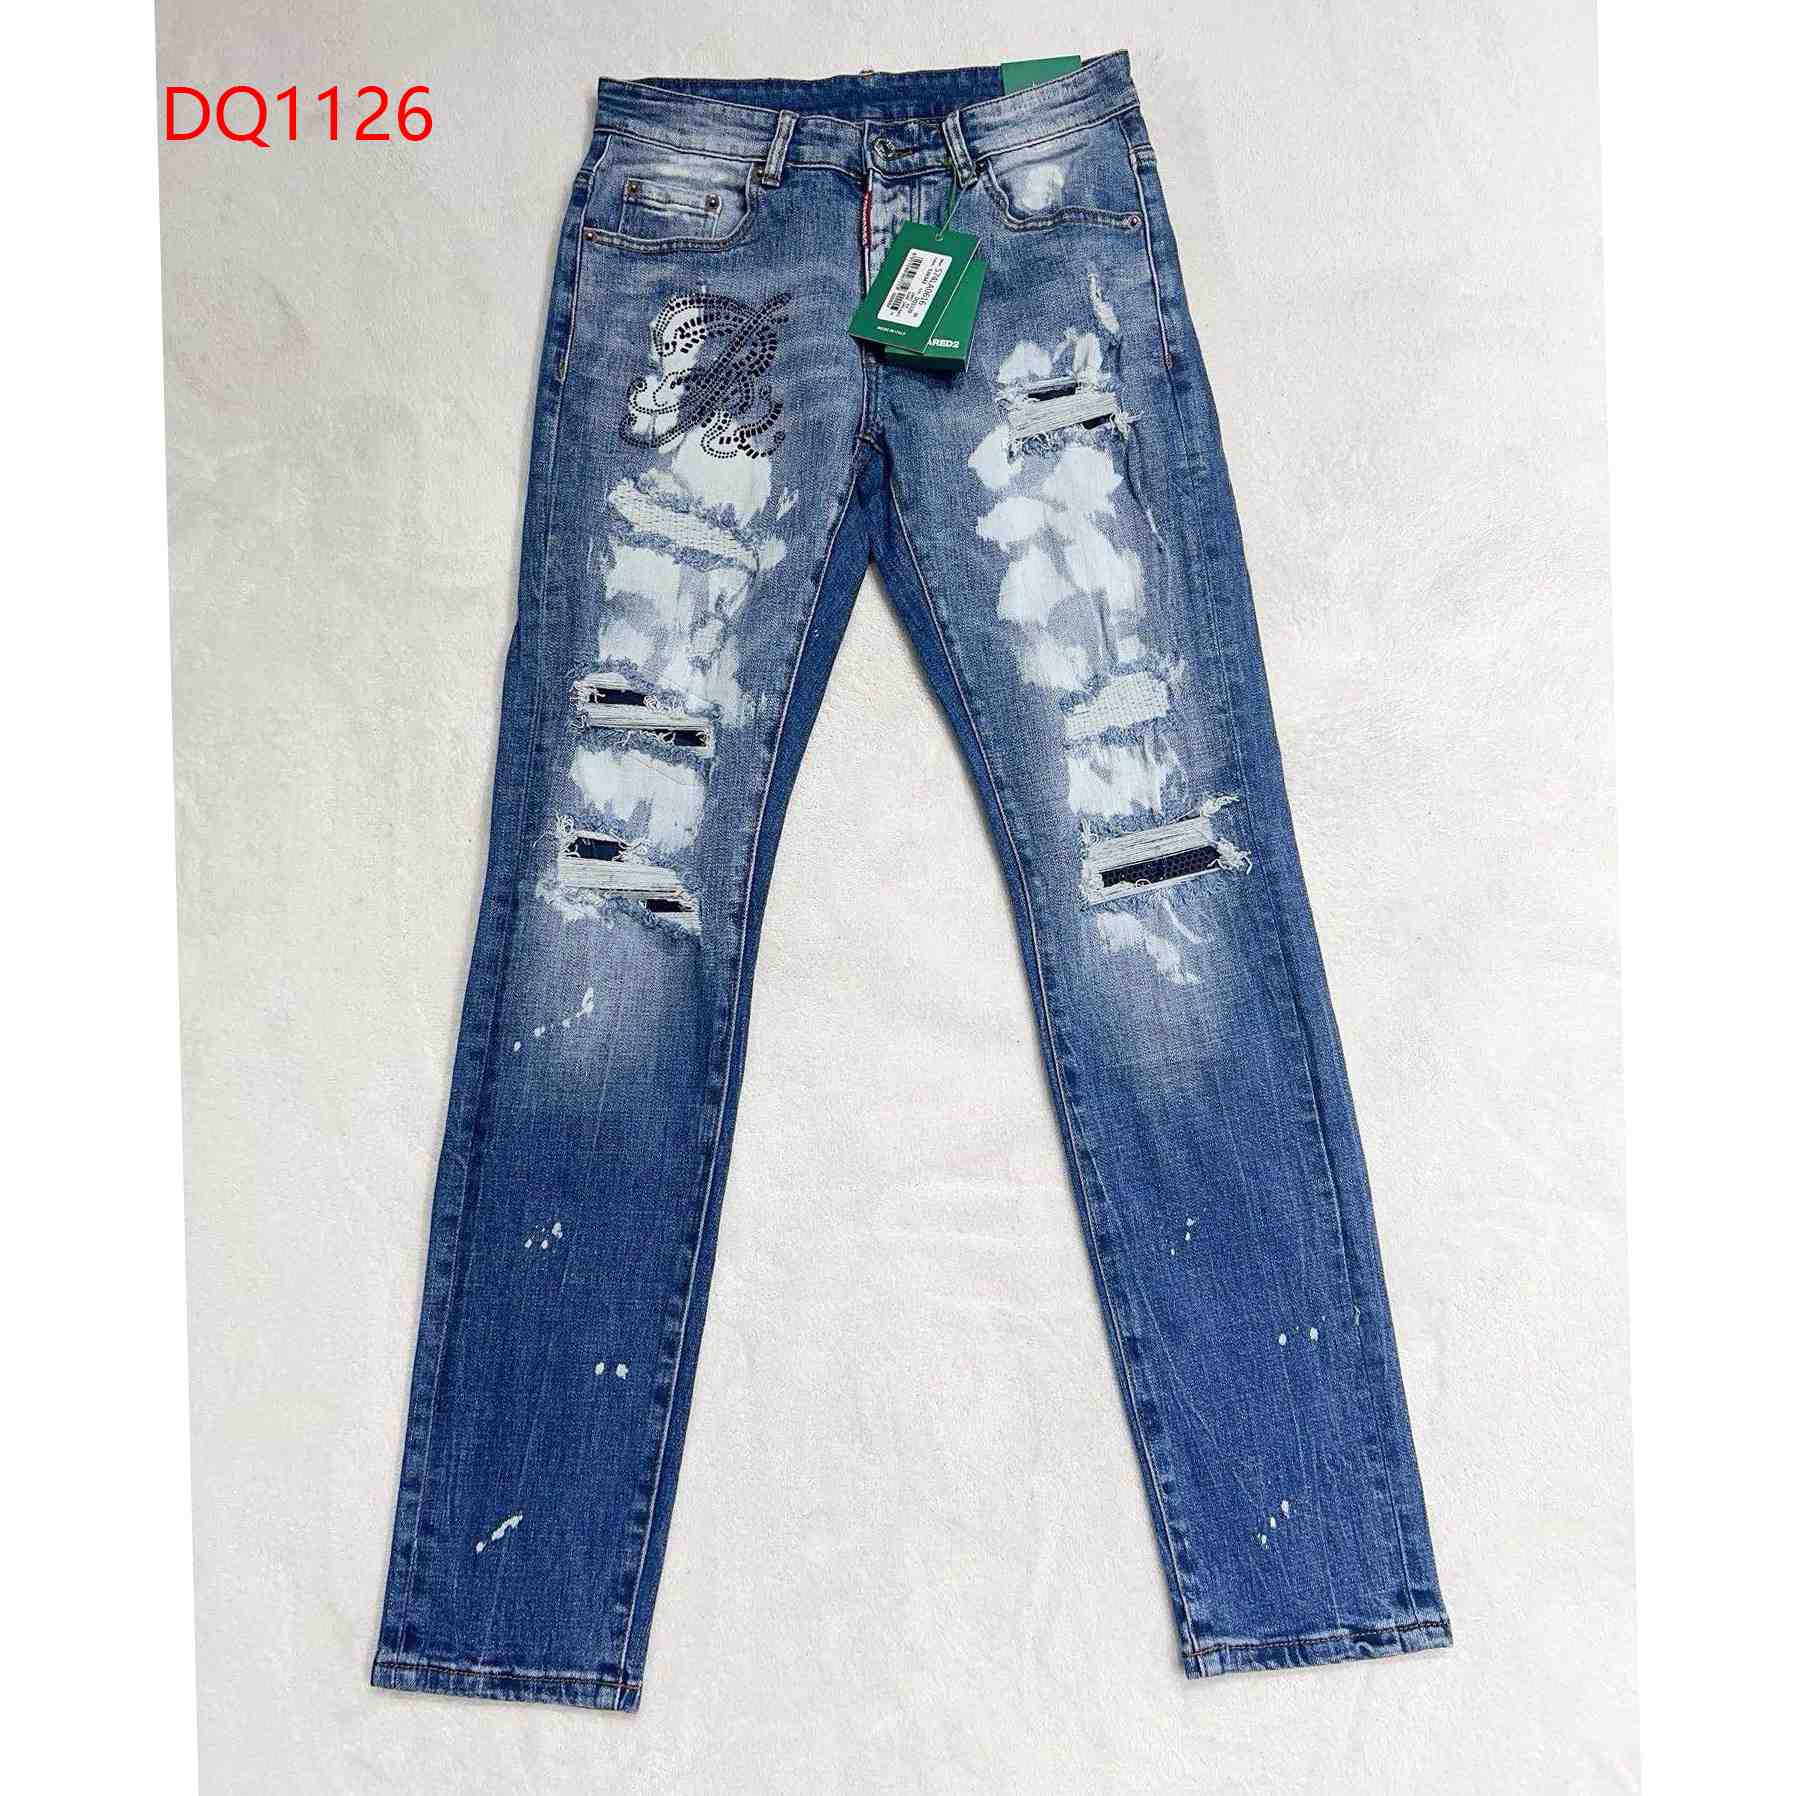 Dsquared2 Denim Jeans     DQ1126 - DesignerGu